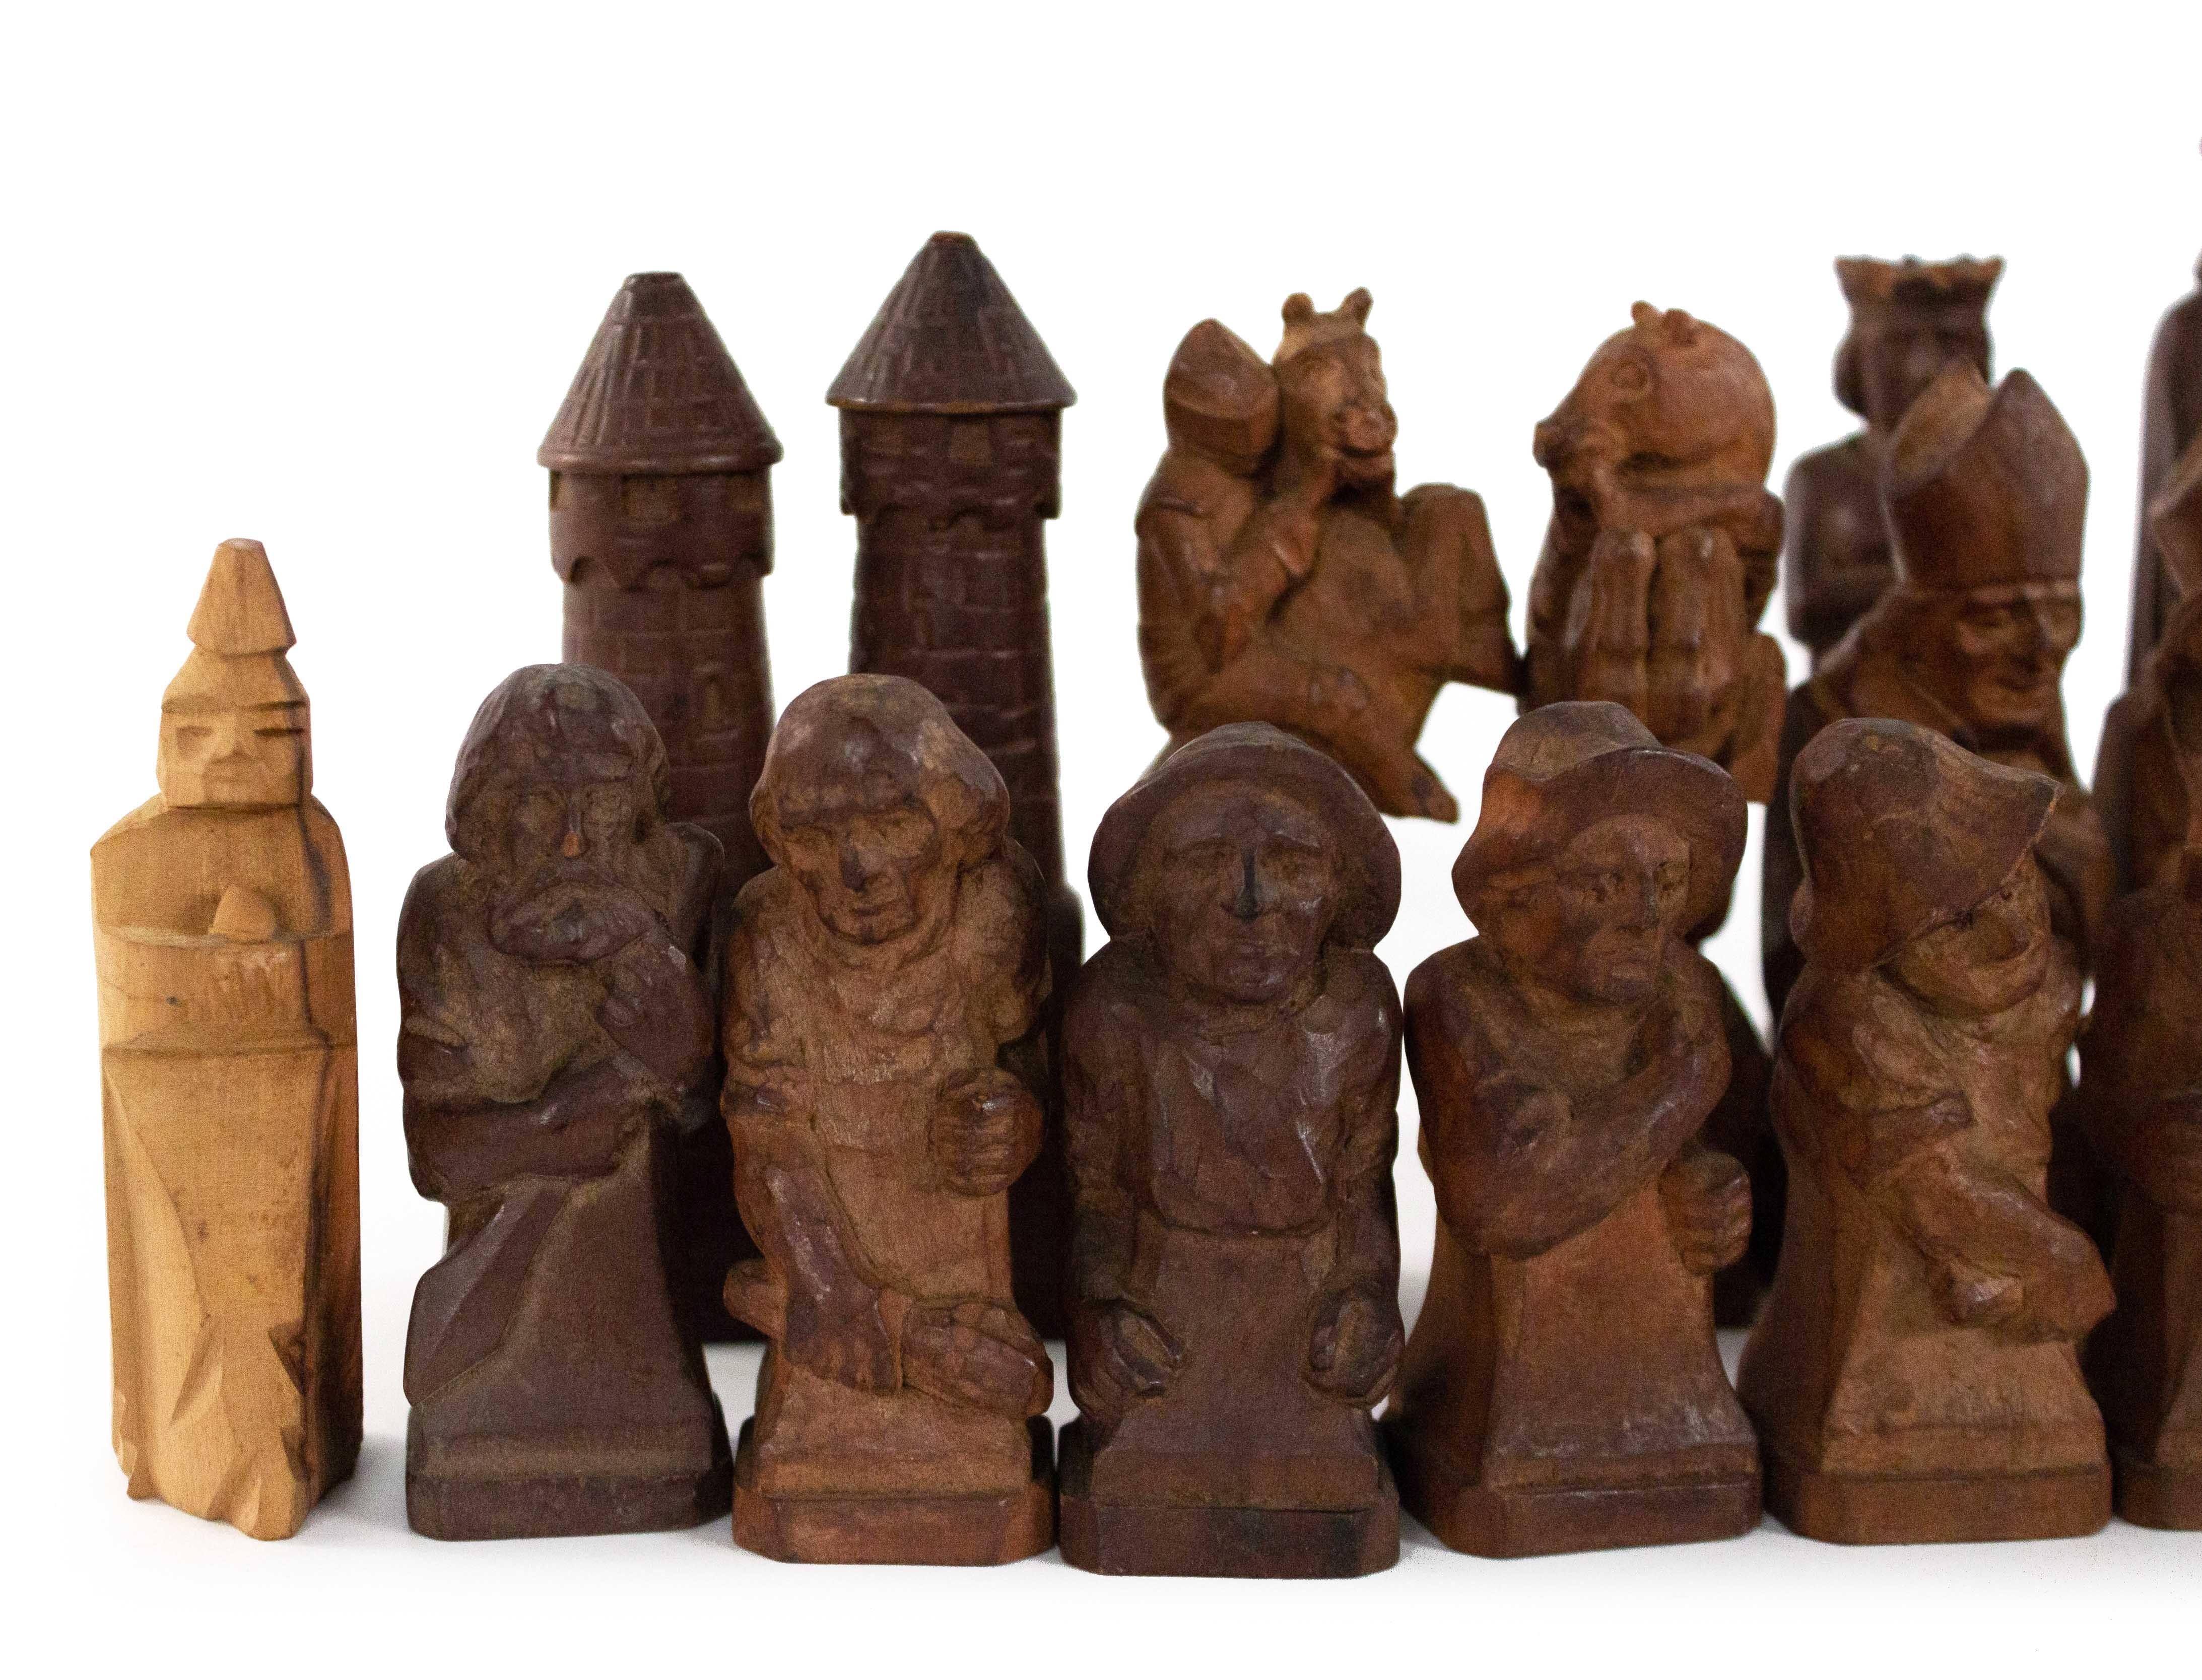 Jeu d'échecs allemand continental (1er quart du 20ème siècle) en bois sculpté à la main avec 32 pièces. (deux pions ne sont pas d'origine). (Marqué sur la base : 